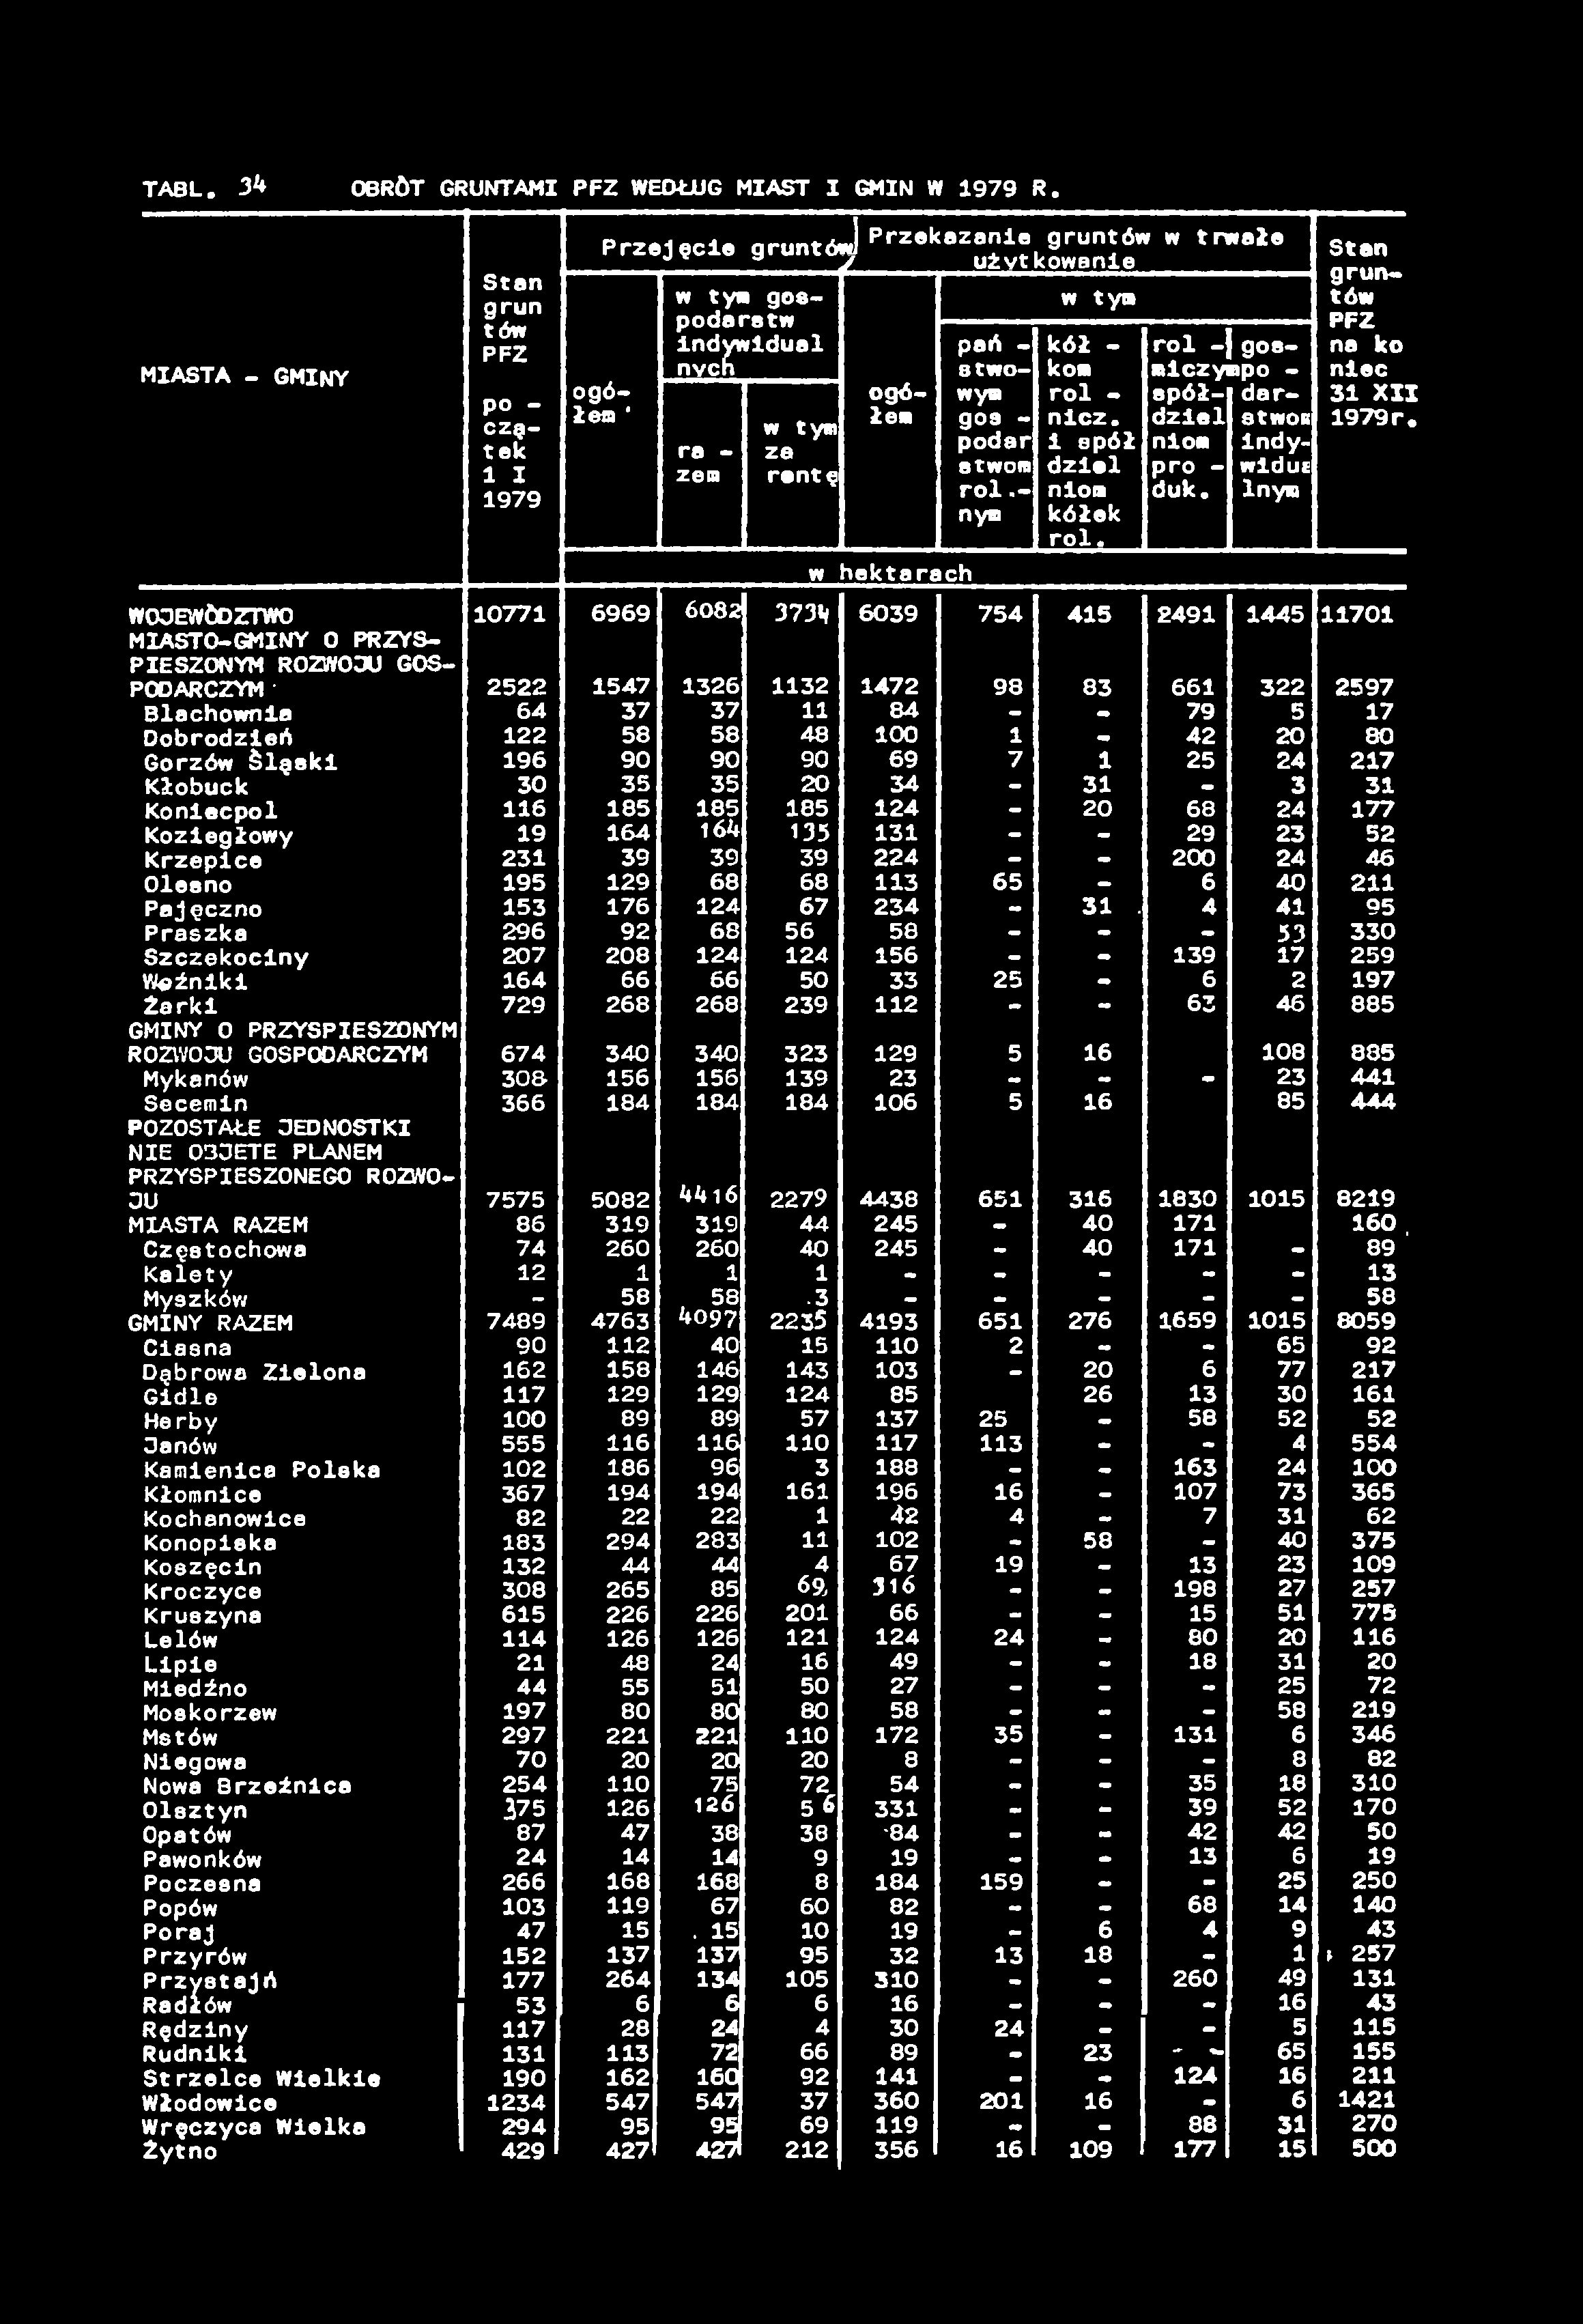 TABL. 34 OBRÖT GRUNTAMI PFZ WEDŁUG MIAST I GMIN W 1979 R.